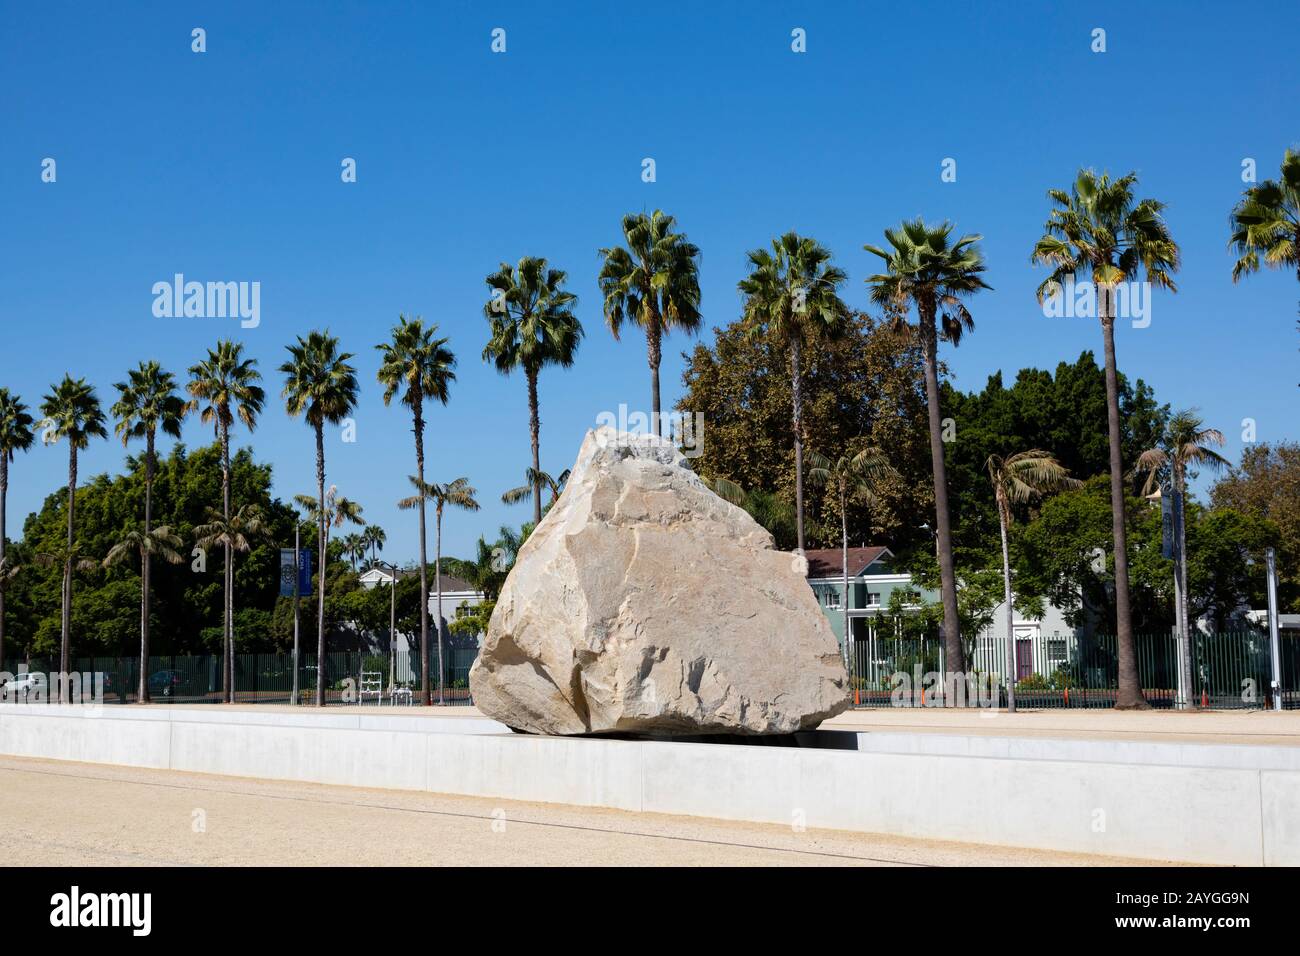 Sculpture d'art public « masse Lévitée » de Michael Heizer, 2012. Un bloc de 350 tonnes situé Resnick North Lawn au Los Angeles County Museum of Art Banque D'Images